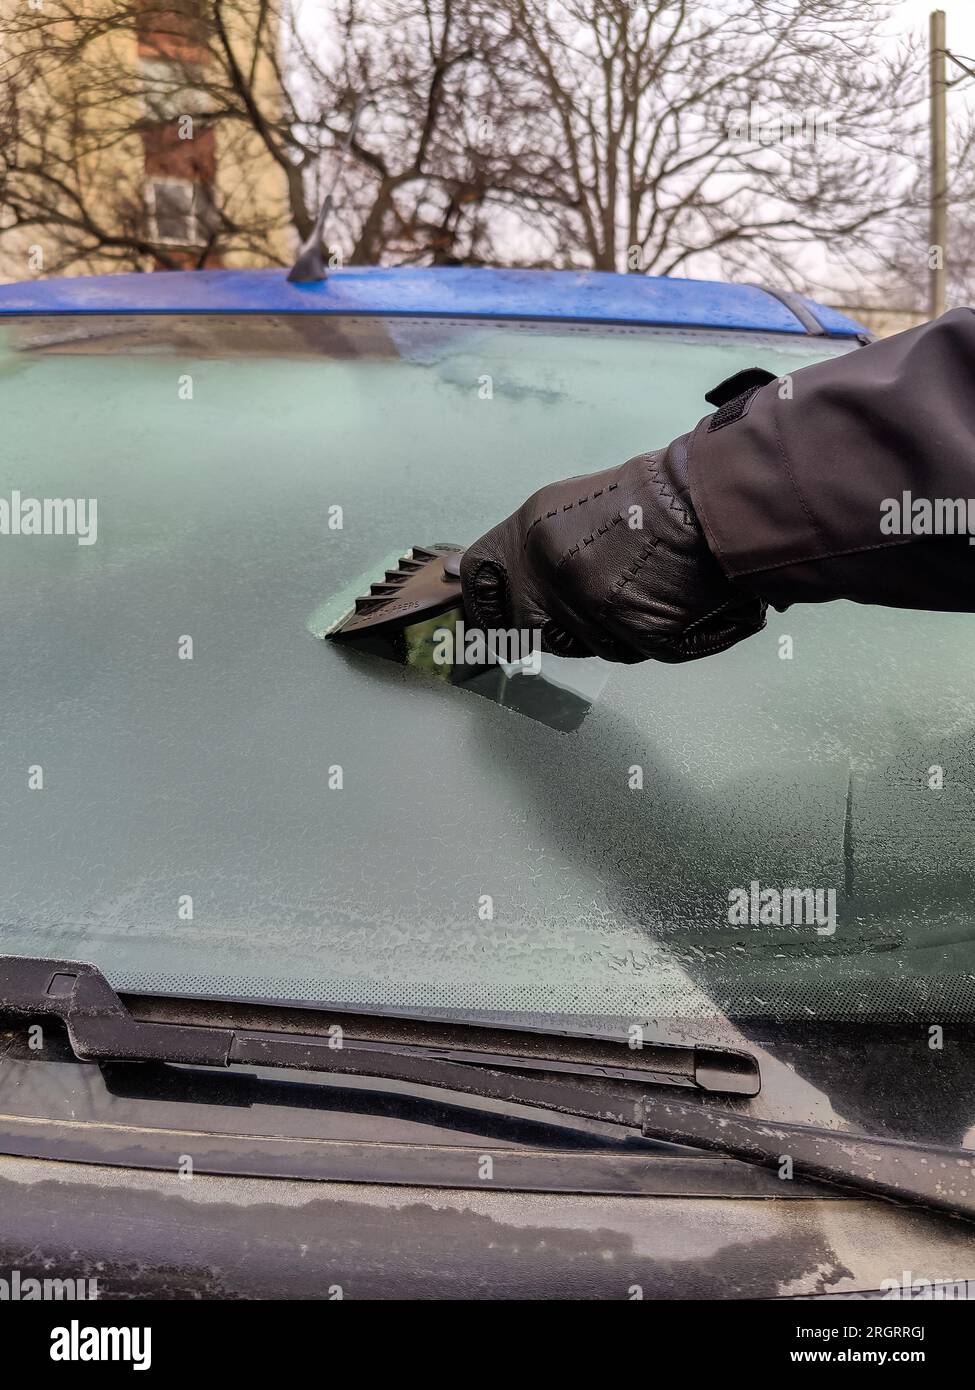 Nettoyage des vitres de voiture en hiver. L'homme gratte le cerceau avec un  grattoir en plastique du pare-brise d'une voiture bleue. Main dans un gant  en cuir noir dans le c Photo